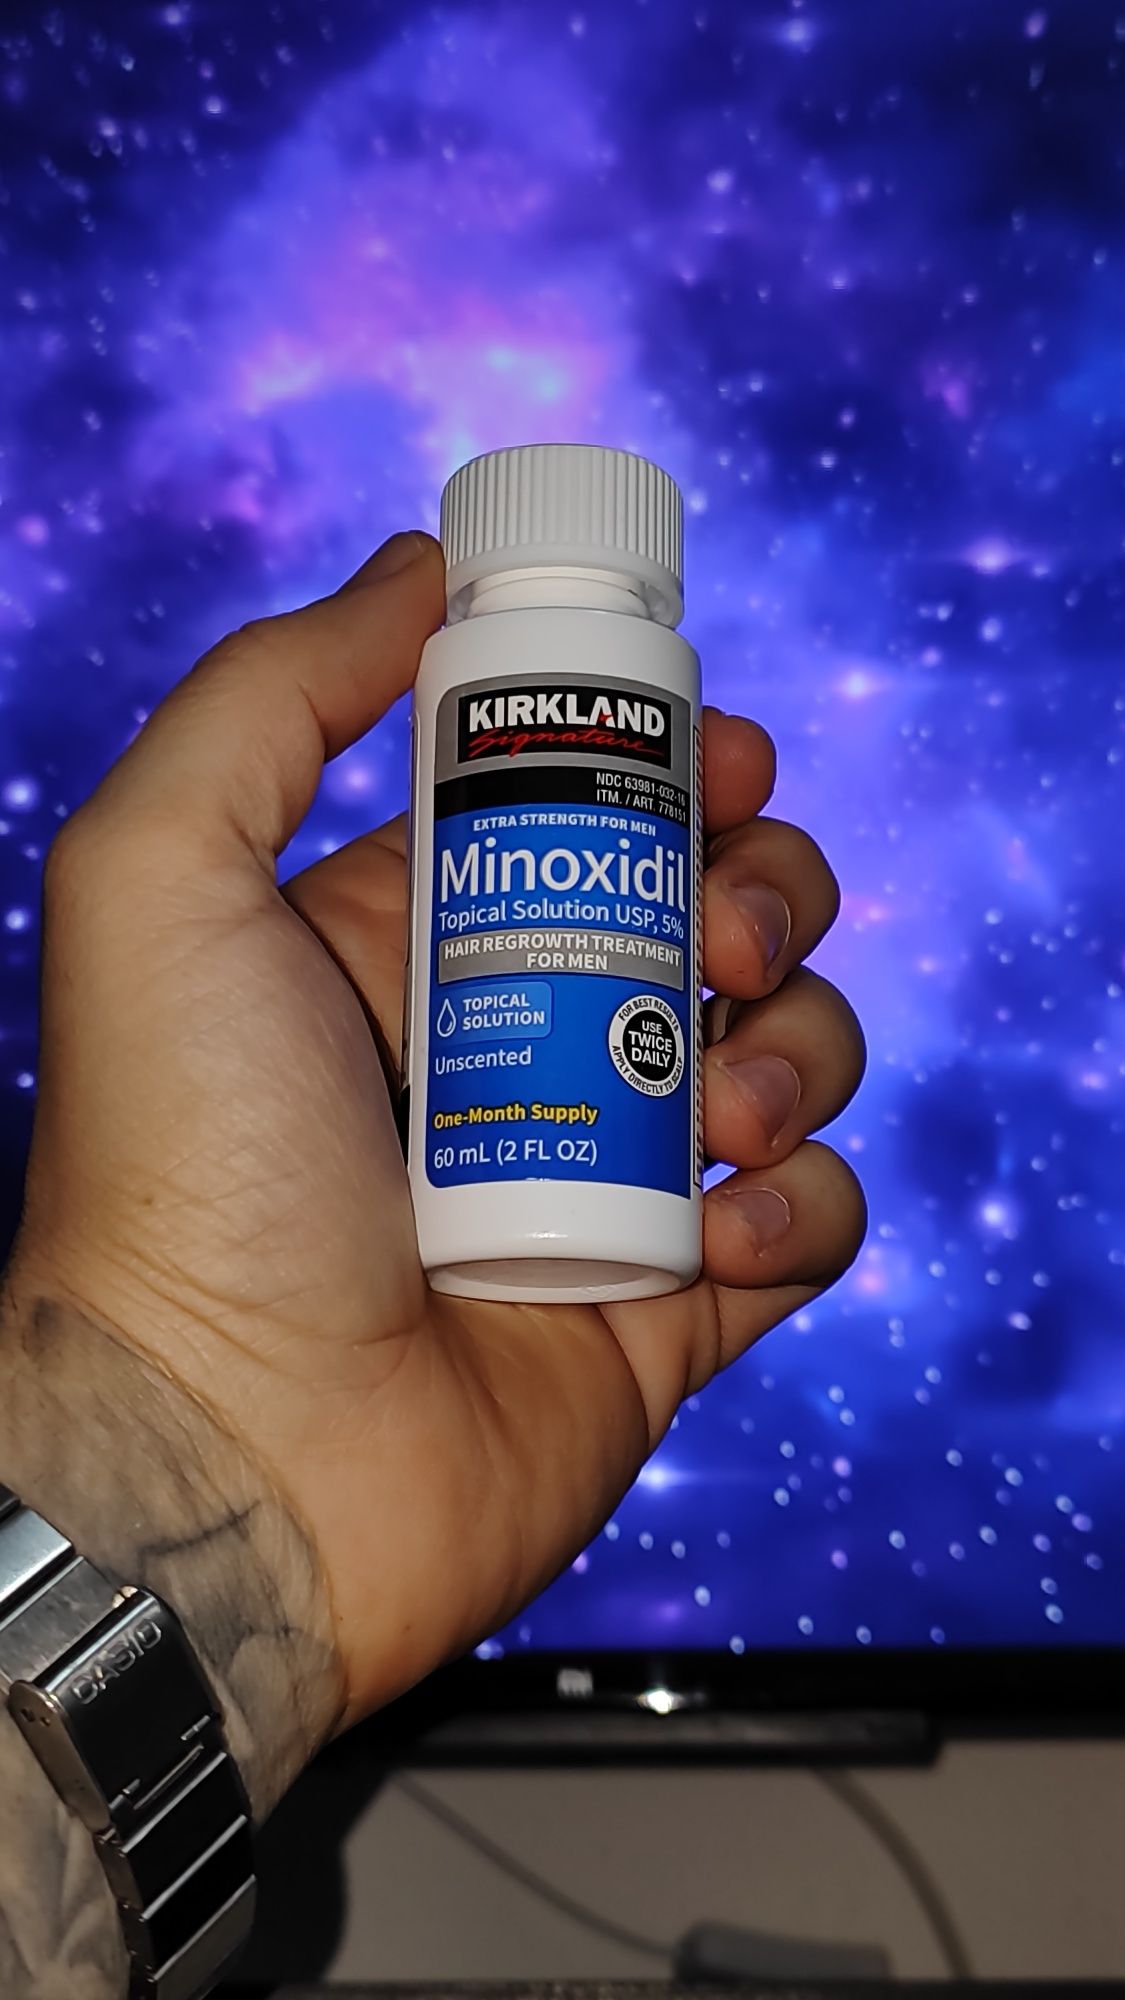 Minoxidil 5% Original